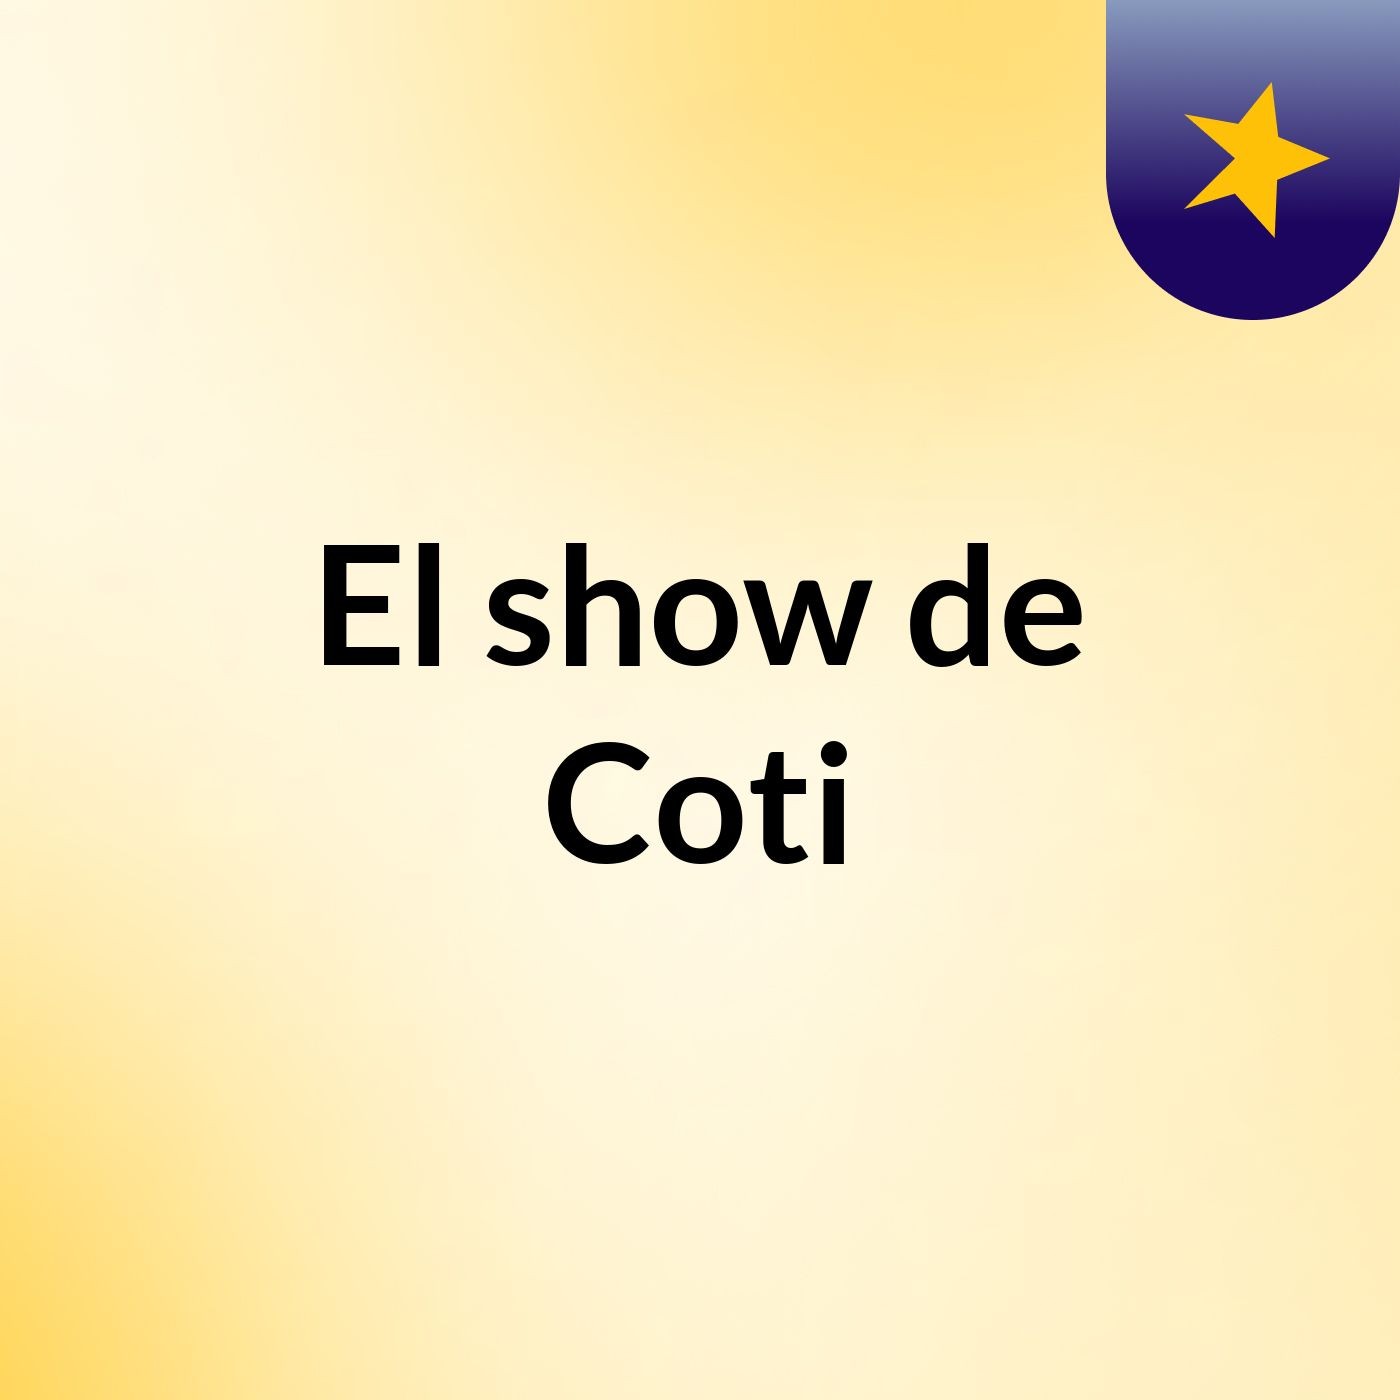 El show de Coti